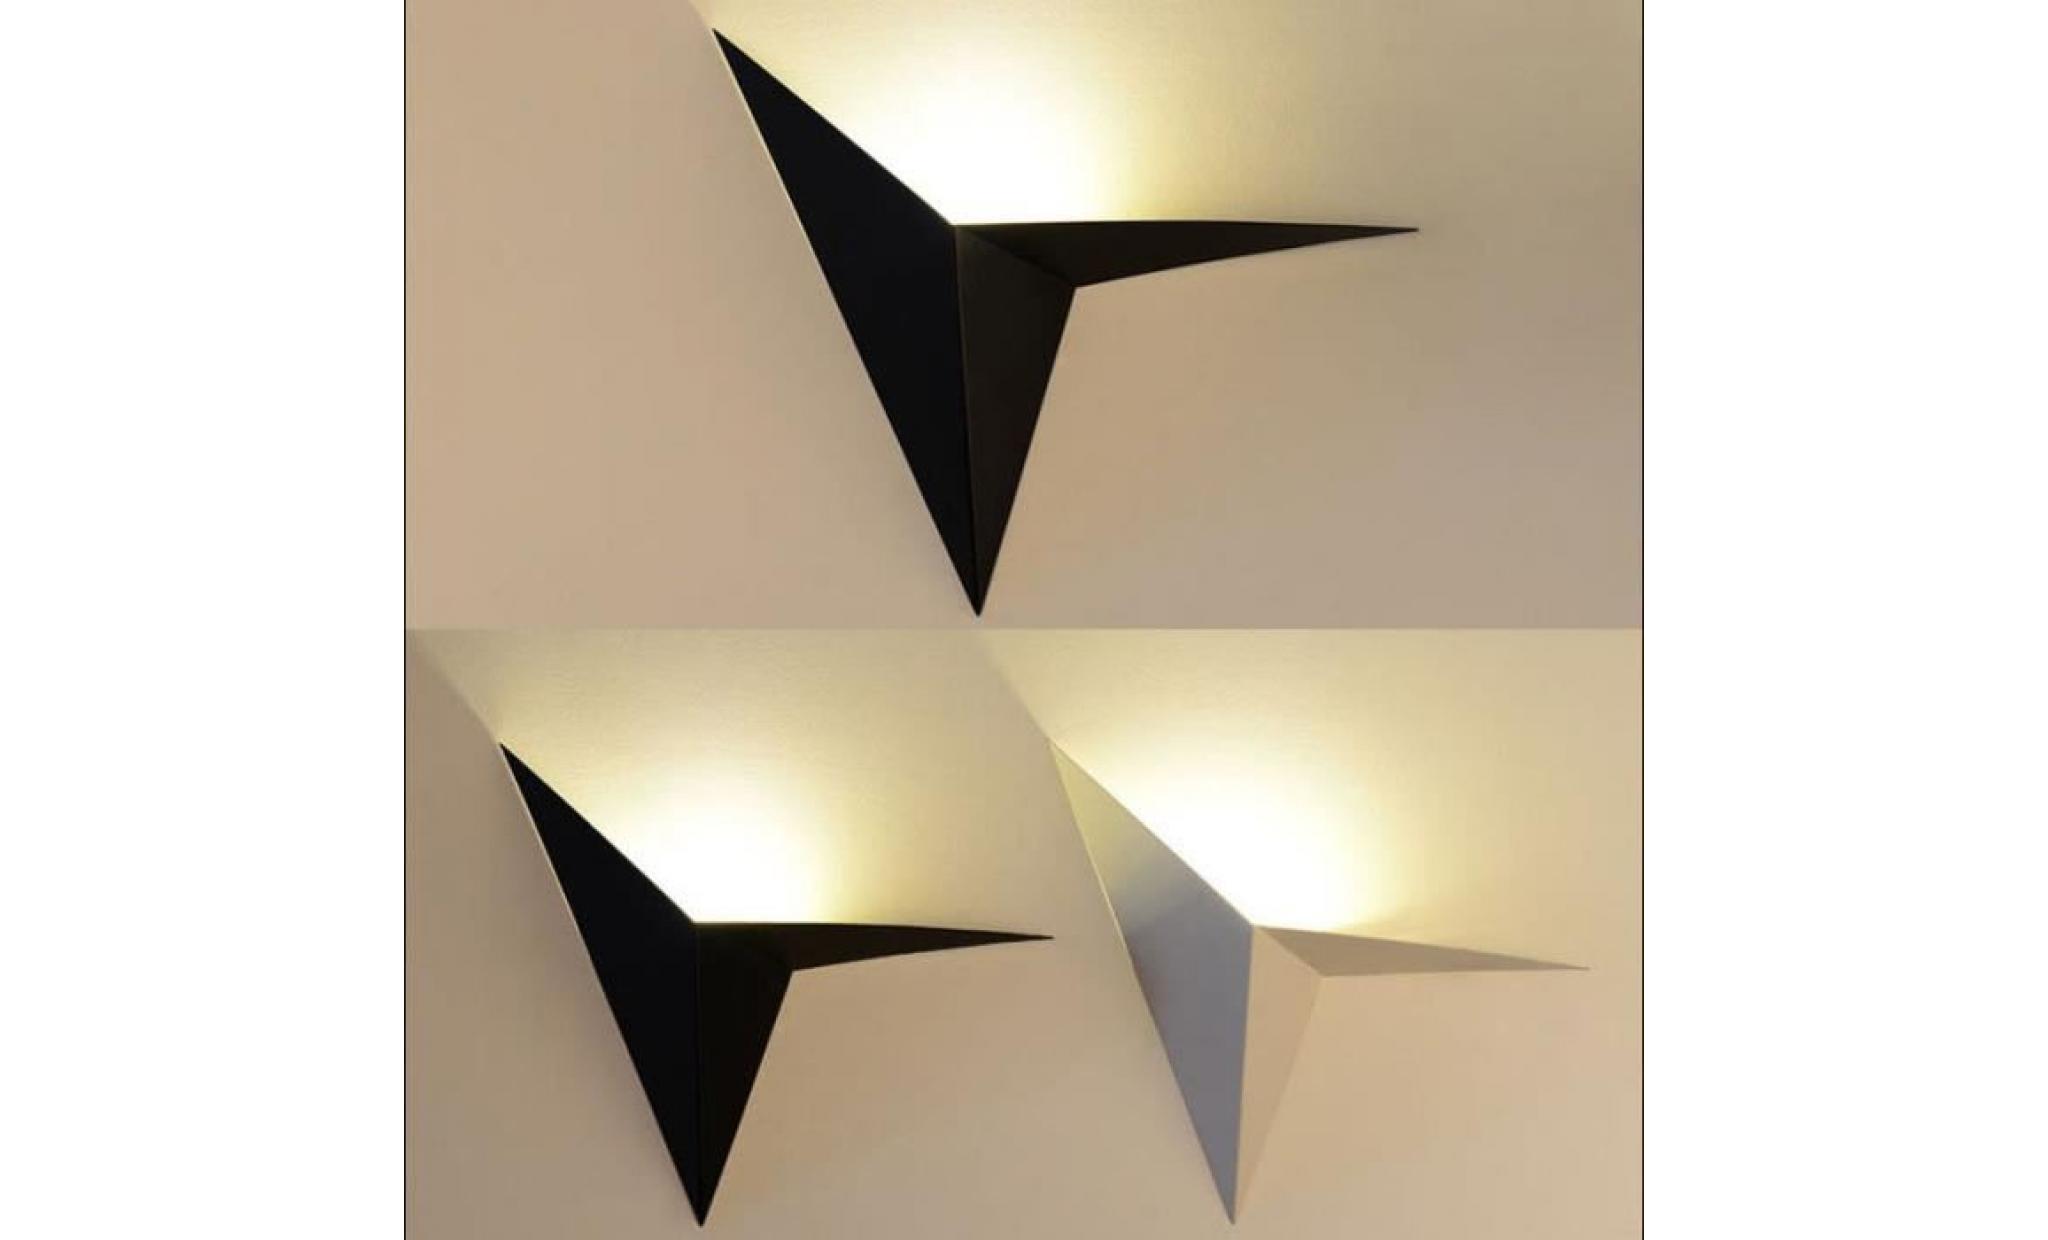 applique mur décoration lampe economie 3w led lumière chaude pour salon chambre table de chevet noir pas cher